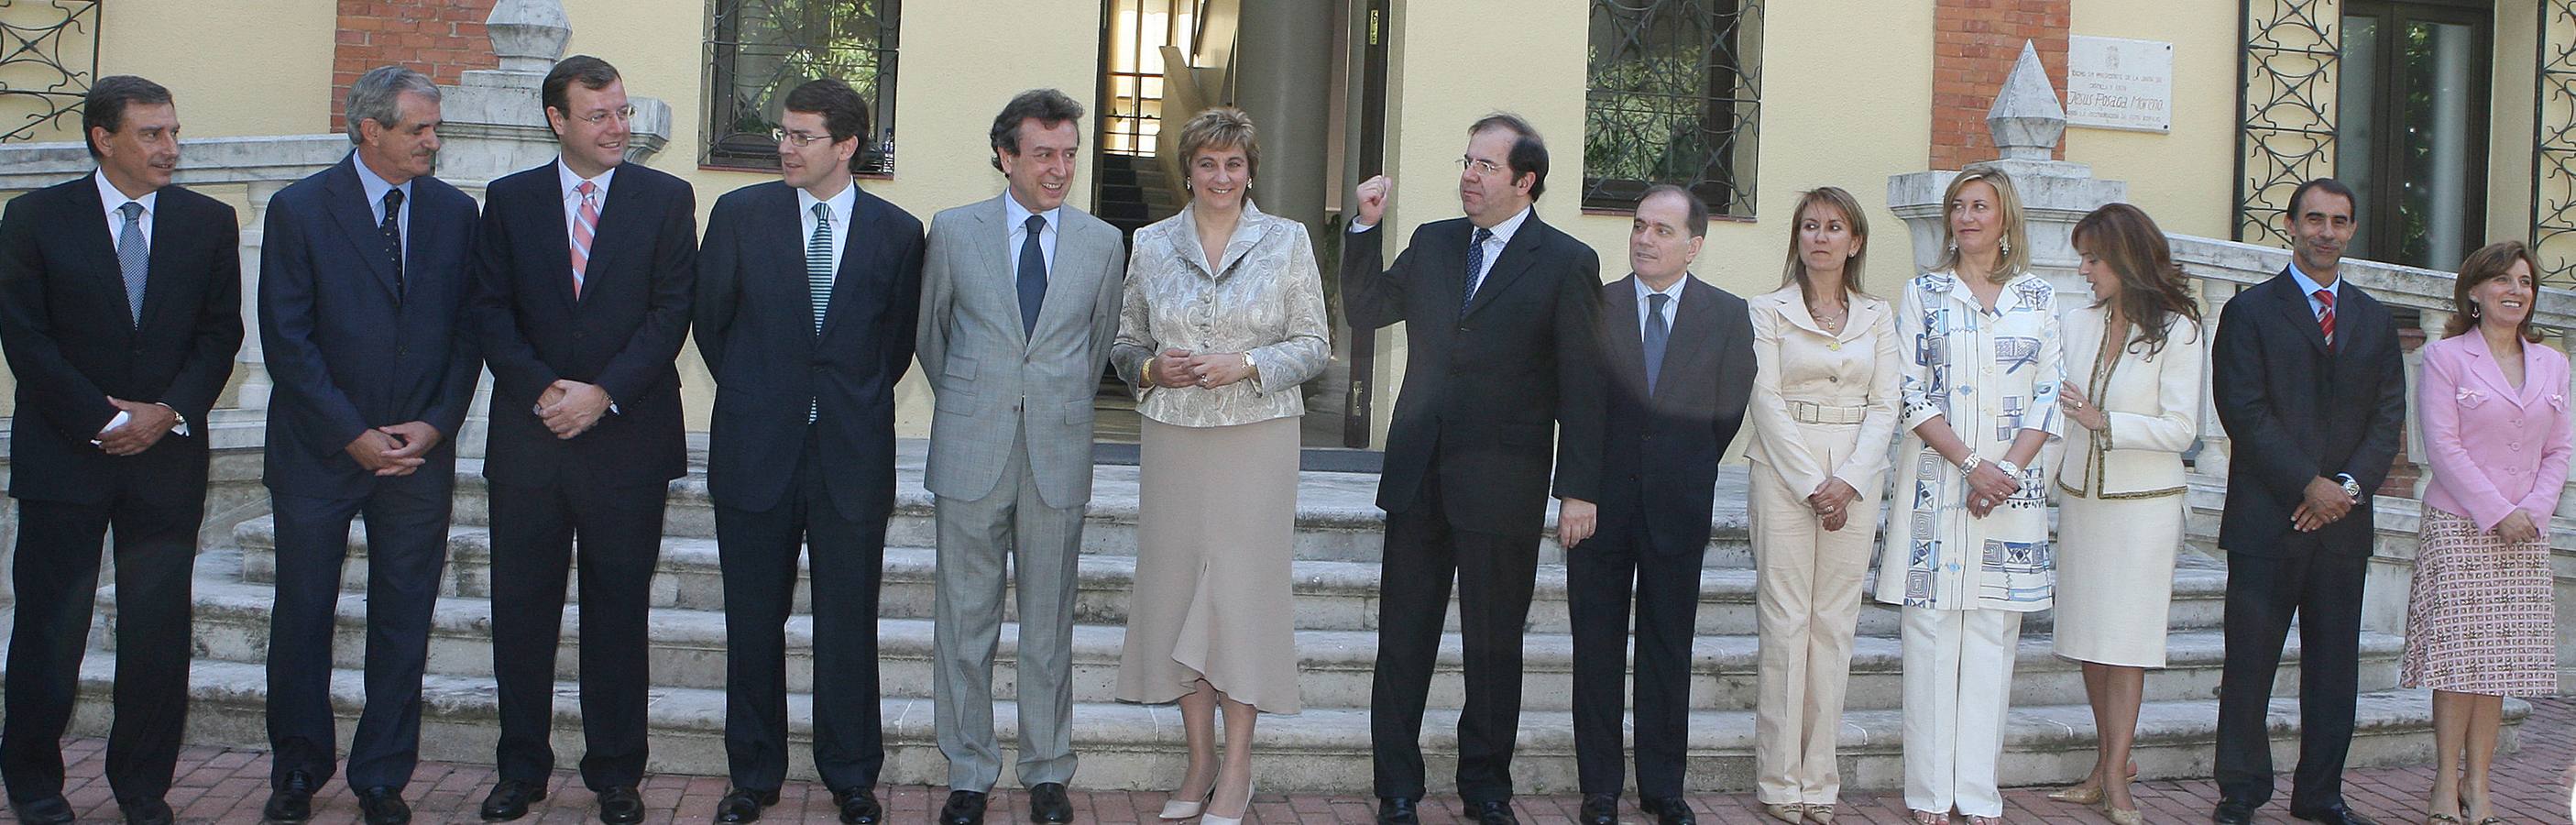 03.07.07 El presidente de la Junta de Castilla y León, Juan Vicente Herrera (c) posa junto a los consejeros del nuevo gobierno regional que le acompañarán para la séptima legislatura.